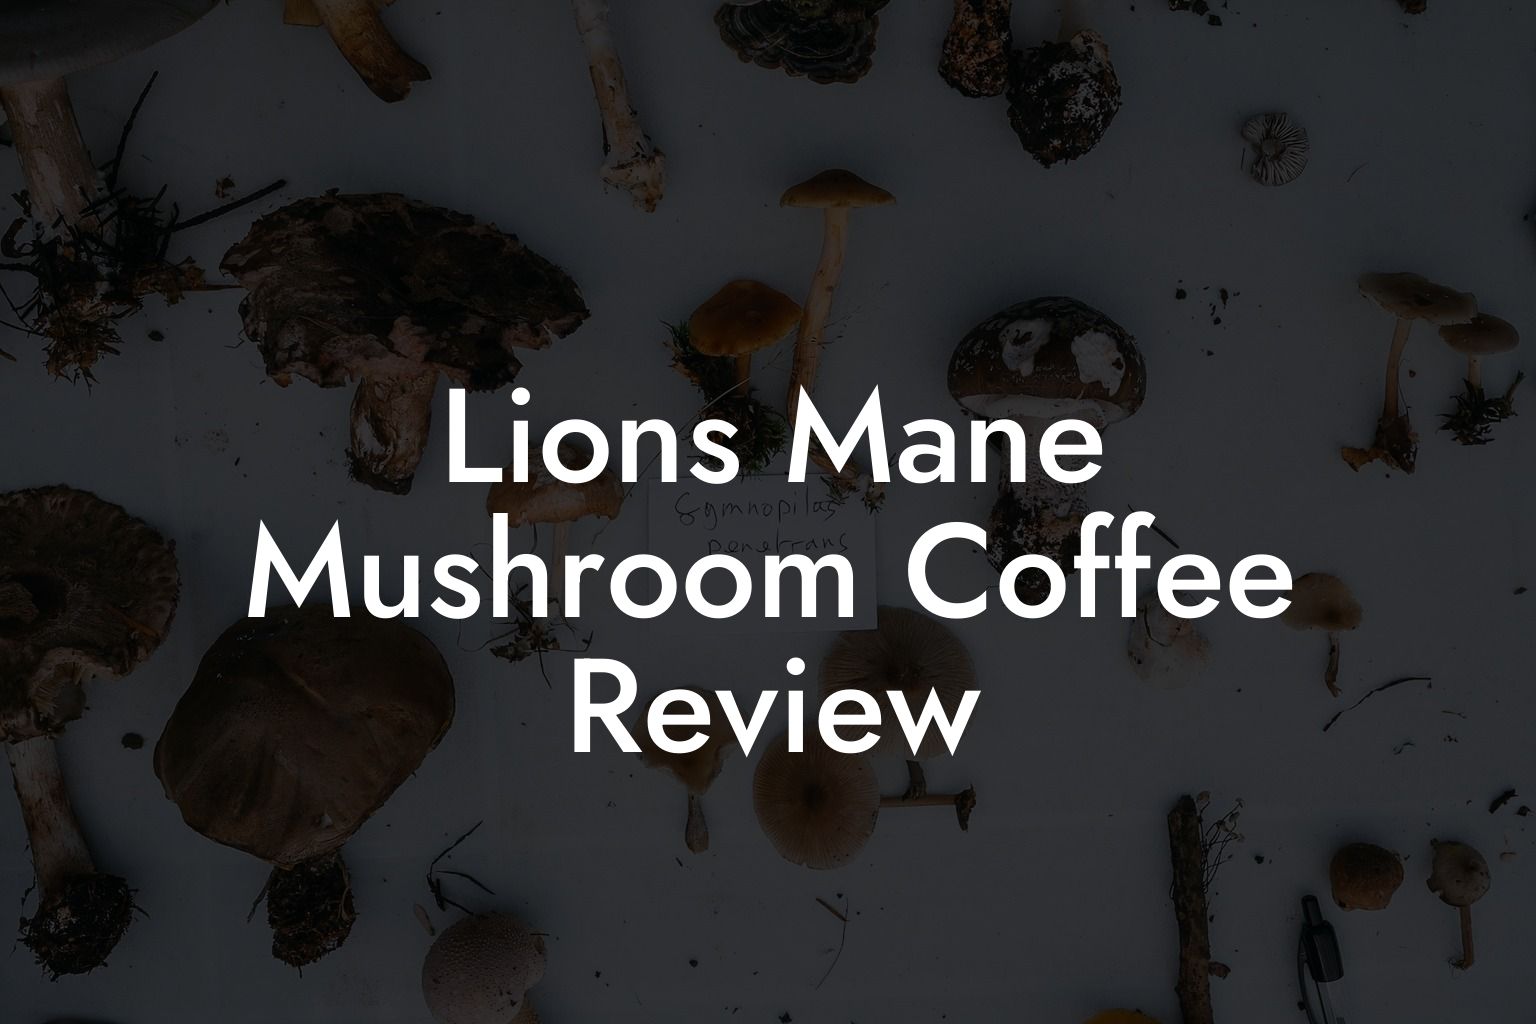 Lions Mane Mushroom Coffee Review